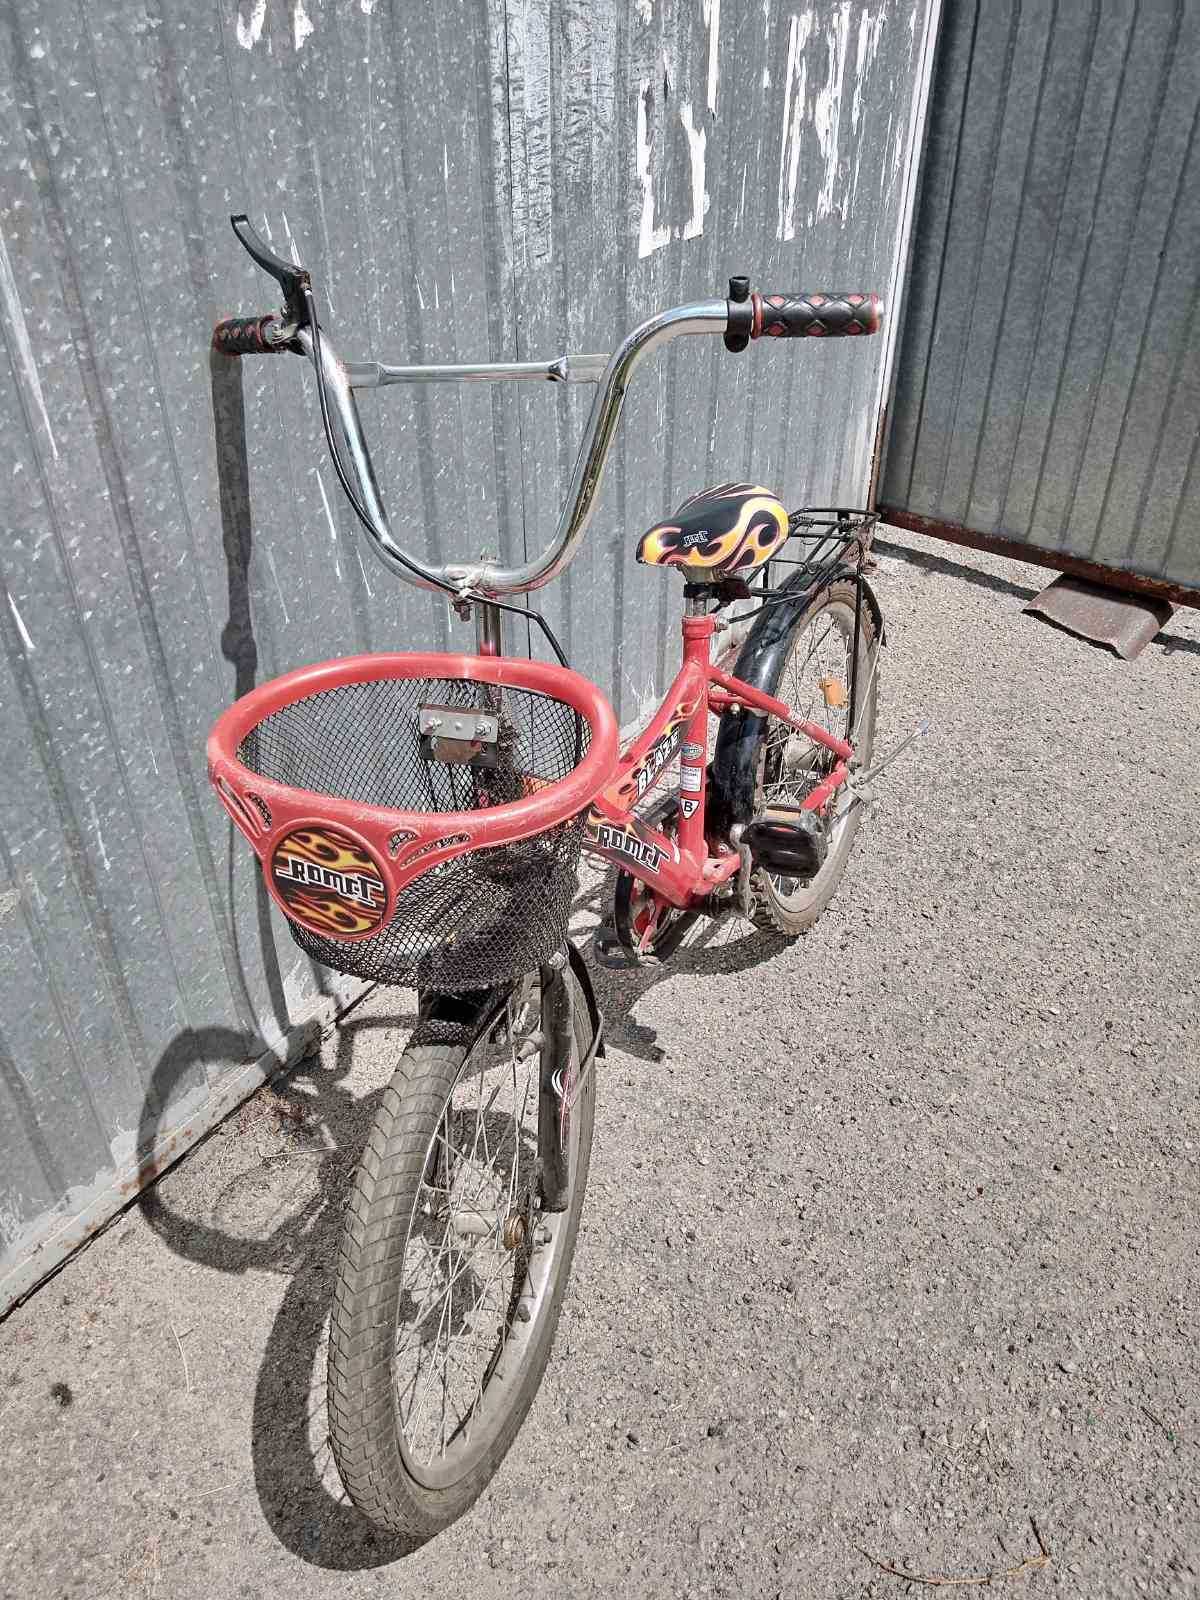 Велосипед с корзиной